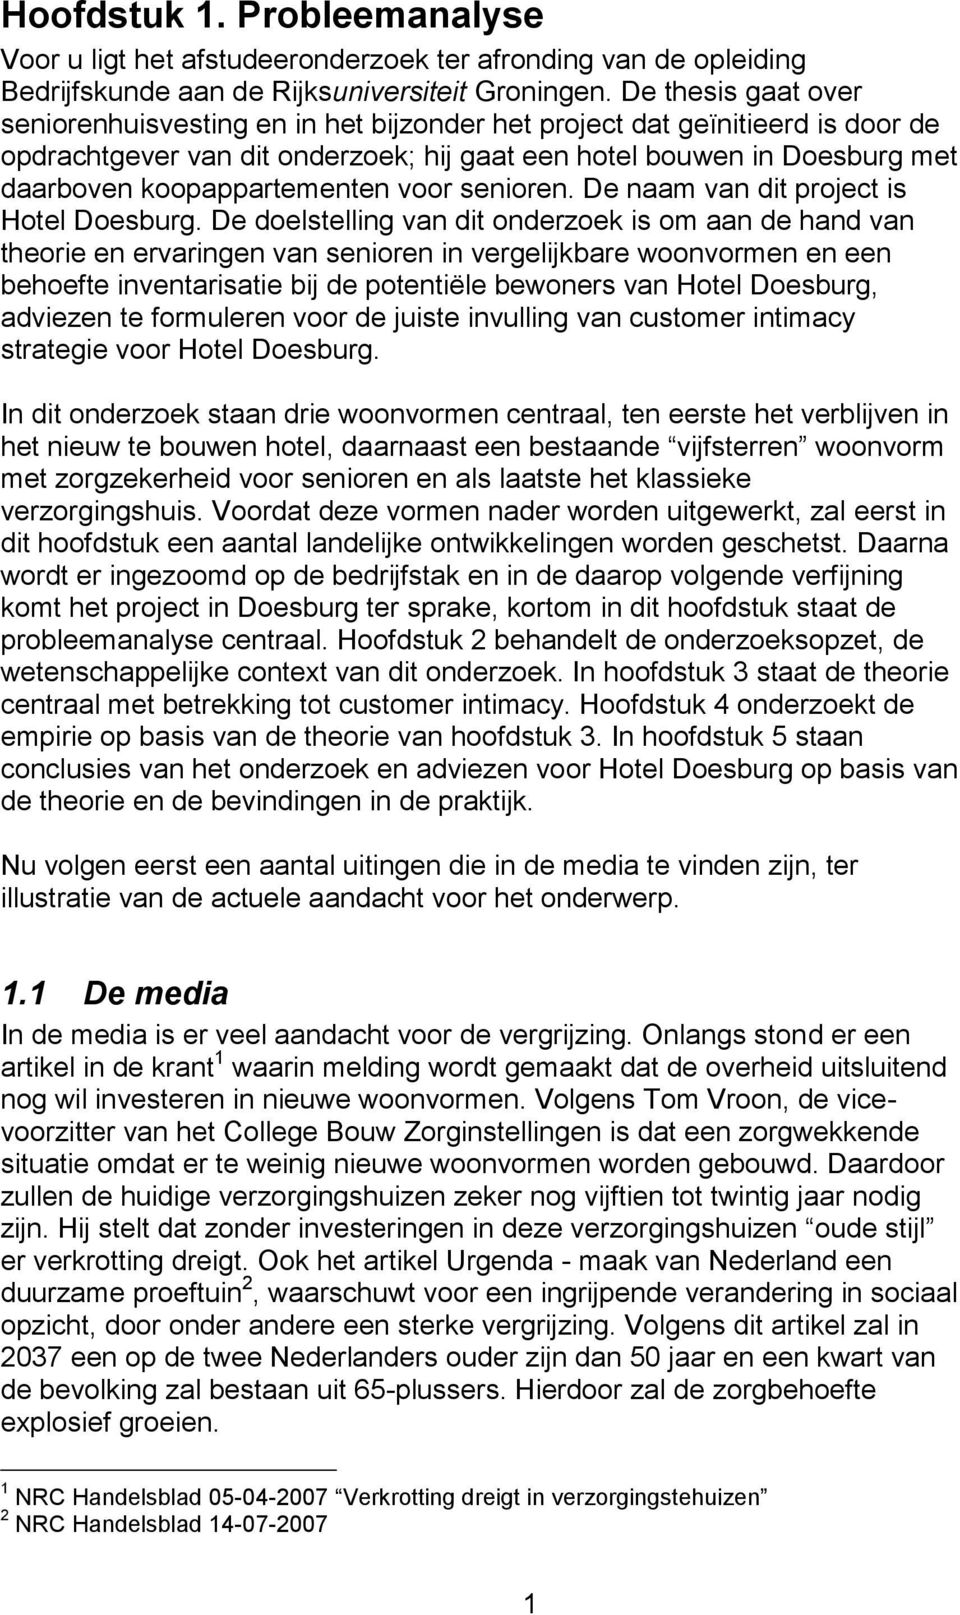 koopappartementen voor senioren. De naam van dit project is Hotel Doesburg.